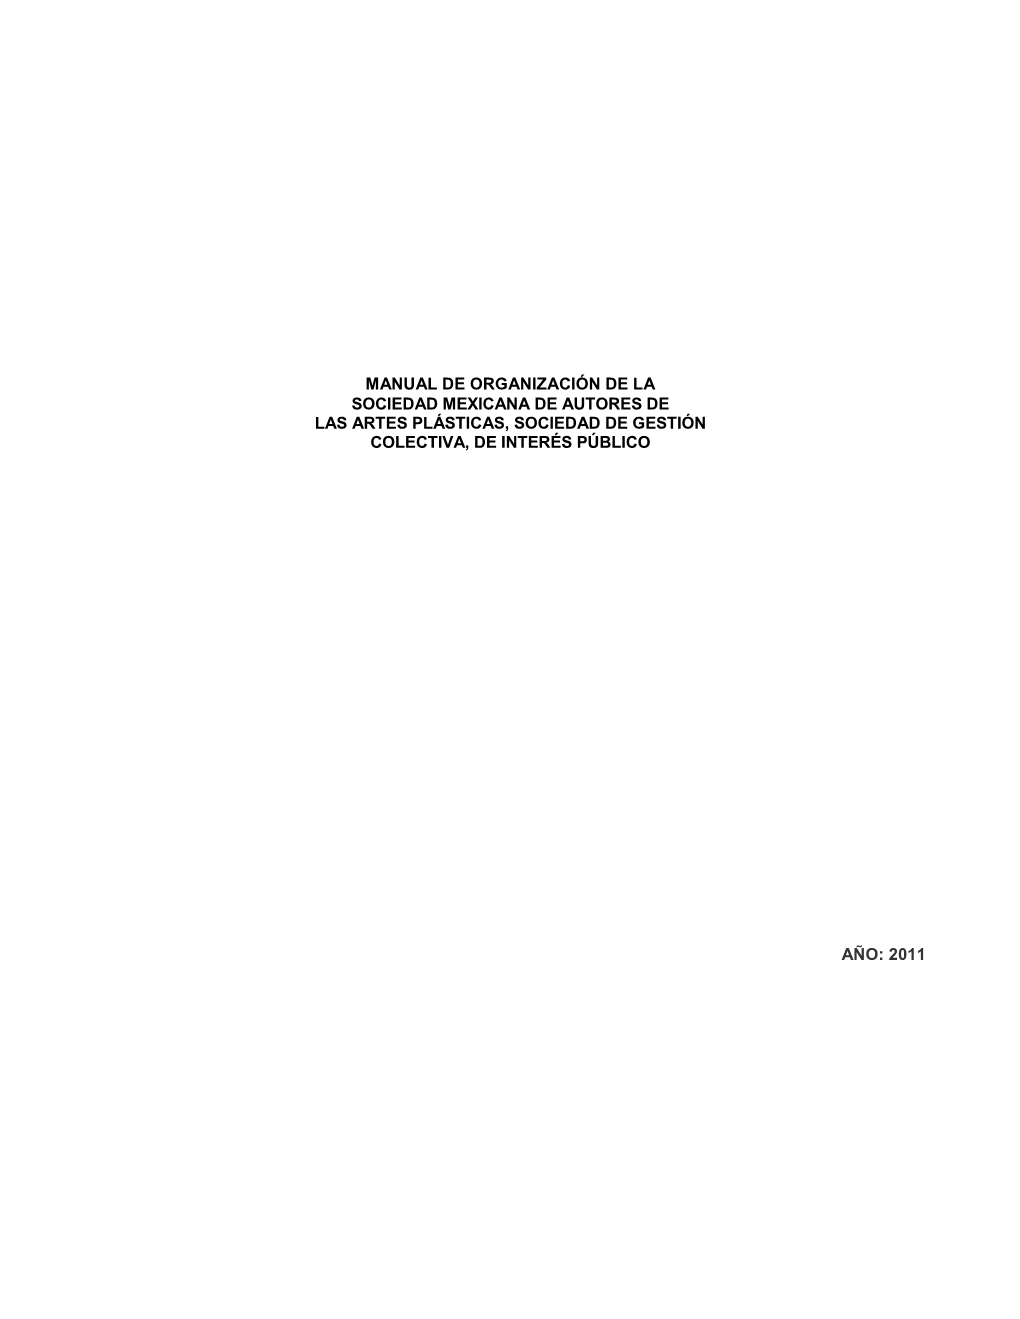 Manual De Organización De La Sociedad Mexicana De Autores De Las Artes Plásticas, Sociedad De Gestión Colectiva, De Interés Público